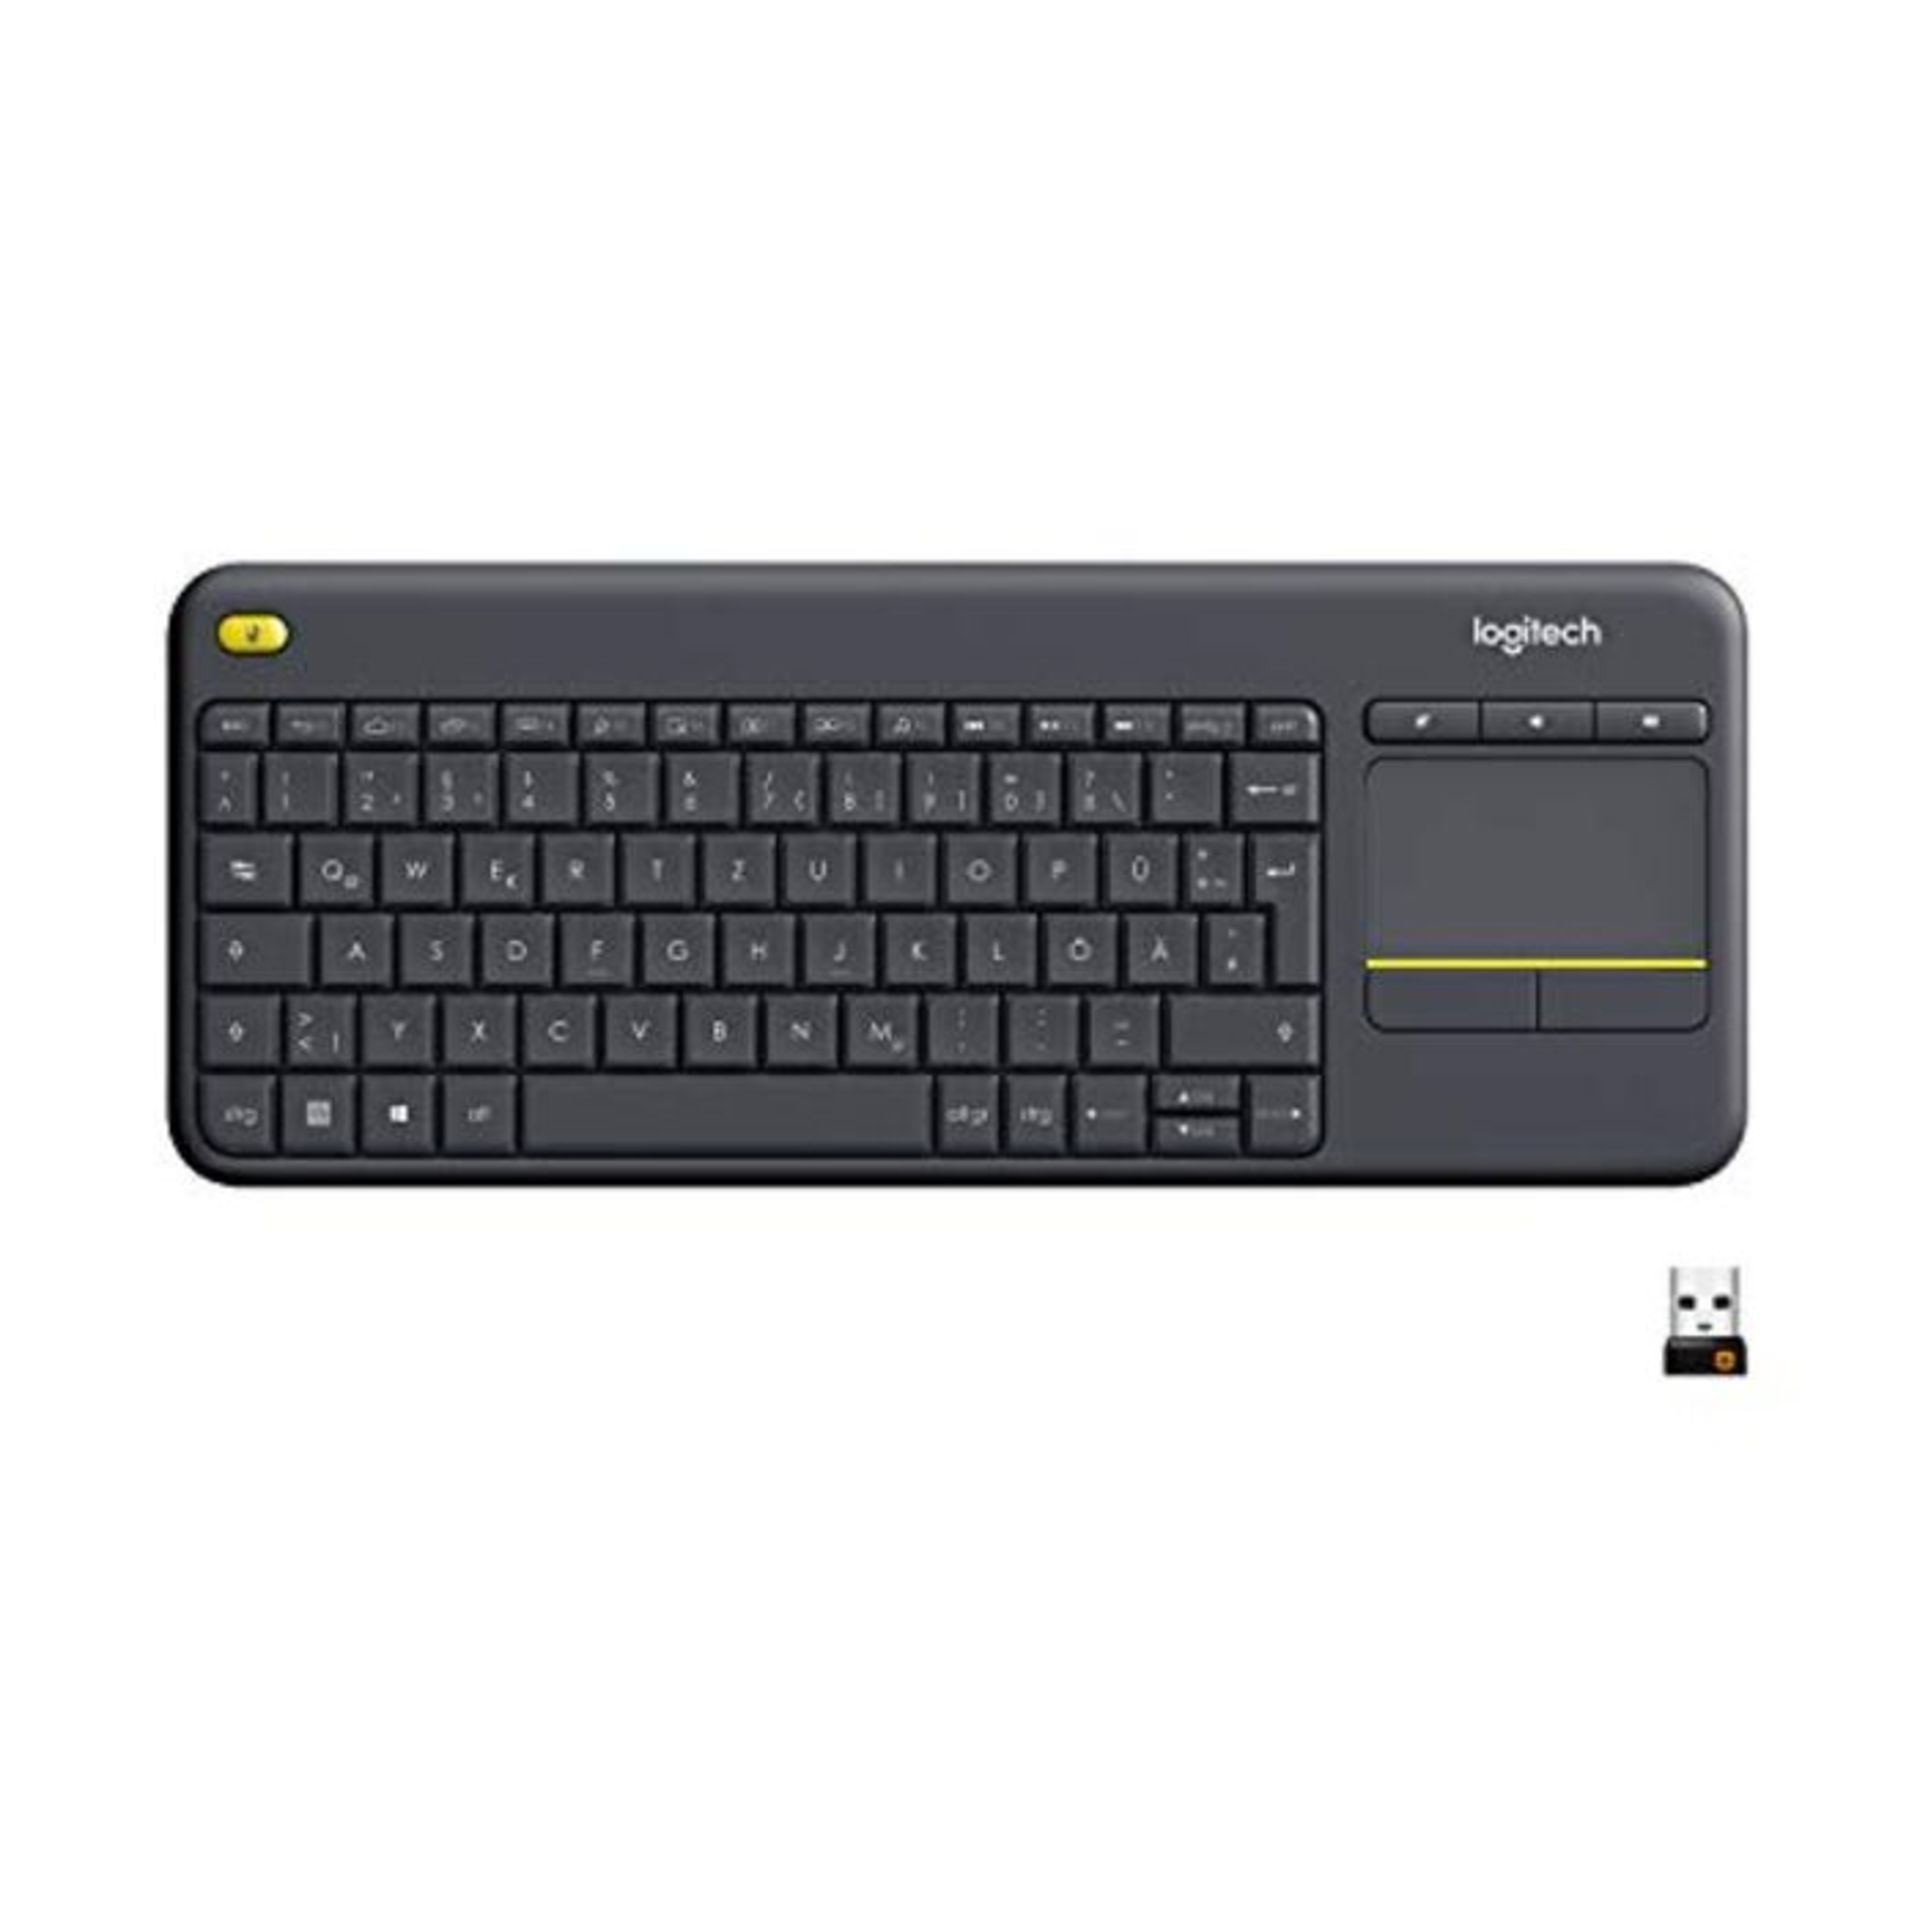 Logitech K400 Plus Wireless Livingroom Keyboard, QWERTZ German Layout - Black